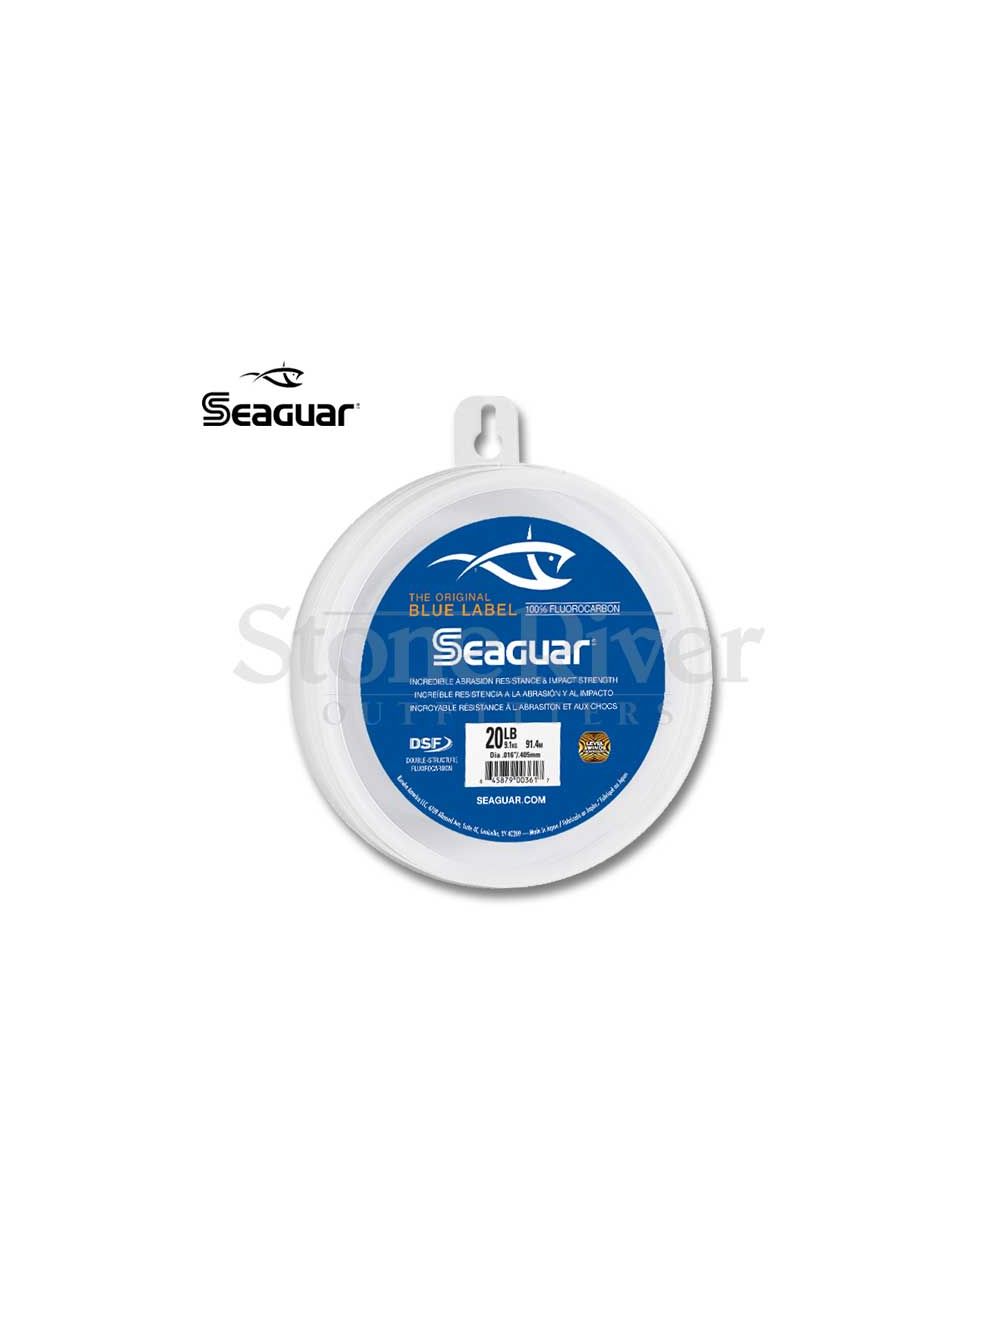 Seaguar Blue Label Fluorocarbon Leader Line (25, 50, 100yd)